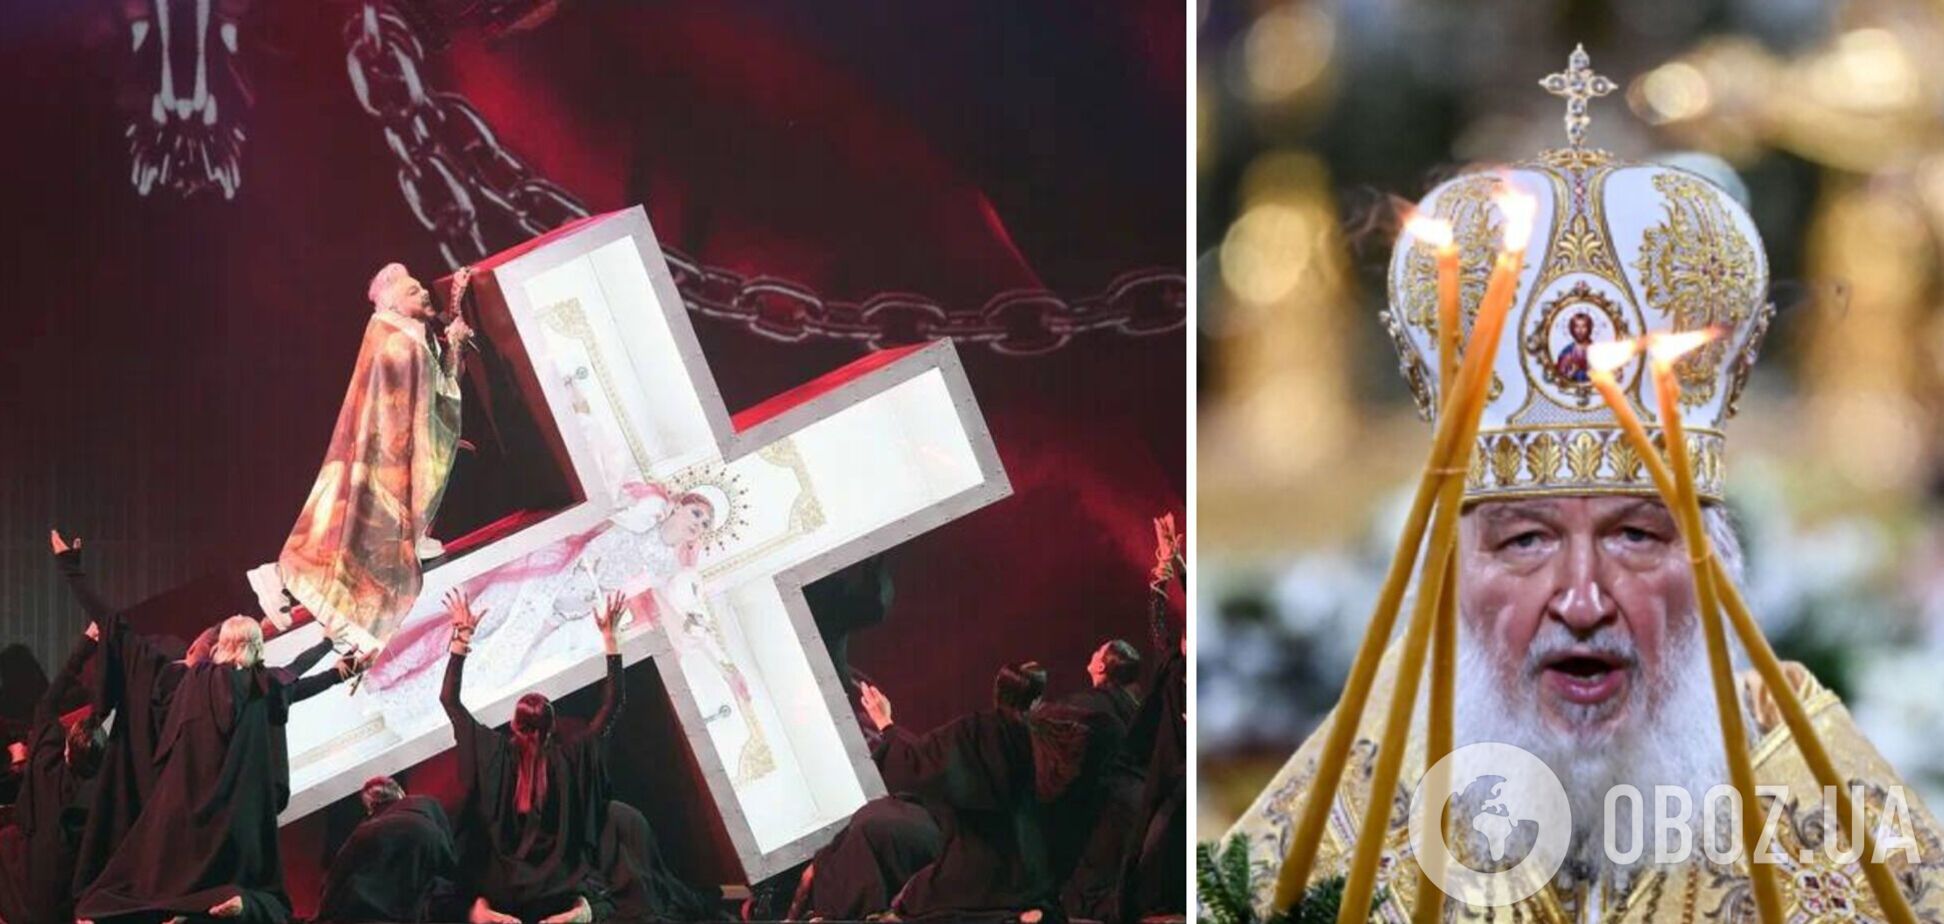 Киркоров вызвал скандал в России шоу с крестом и 'распятой' женщиной: РПЦ заявила о провокации